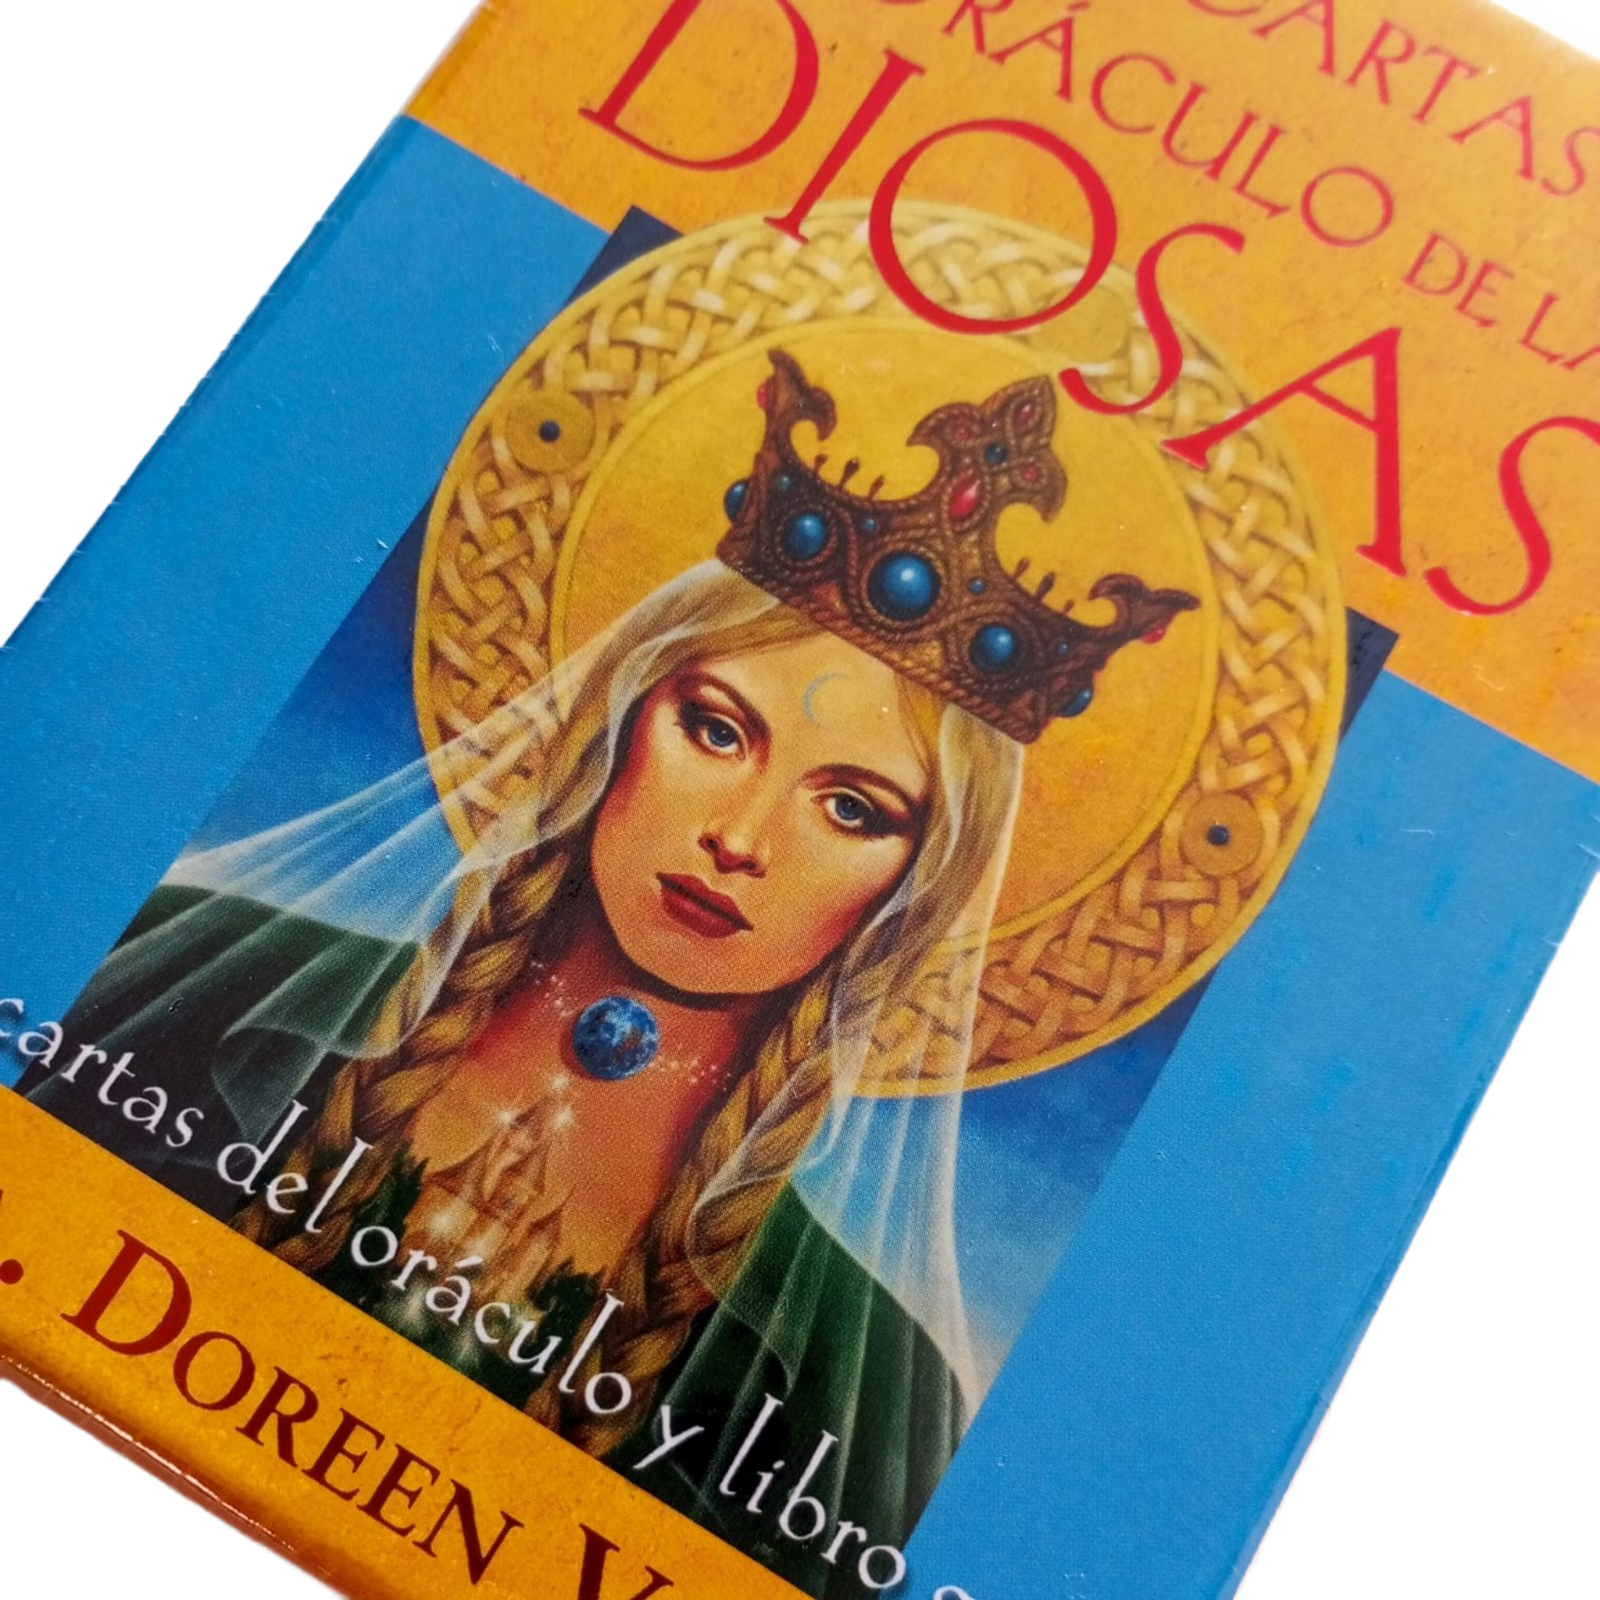 Las cartas del oráculo de las diosas - Doreen Virtue